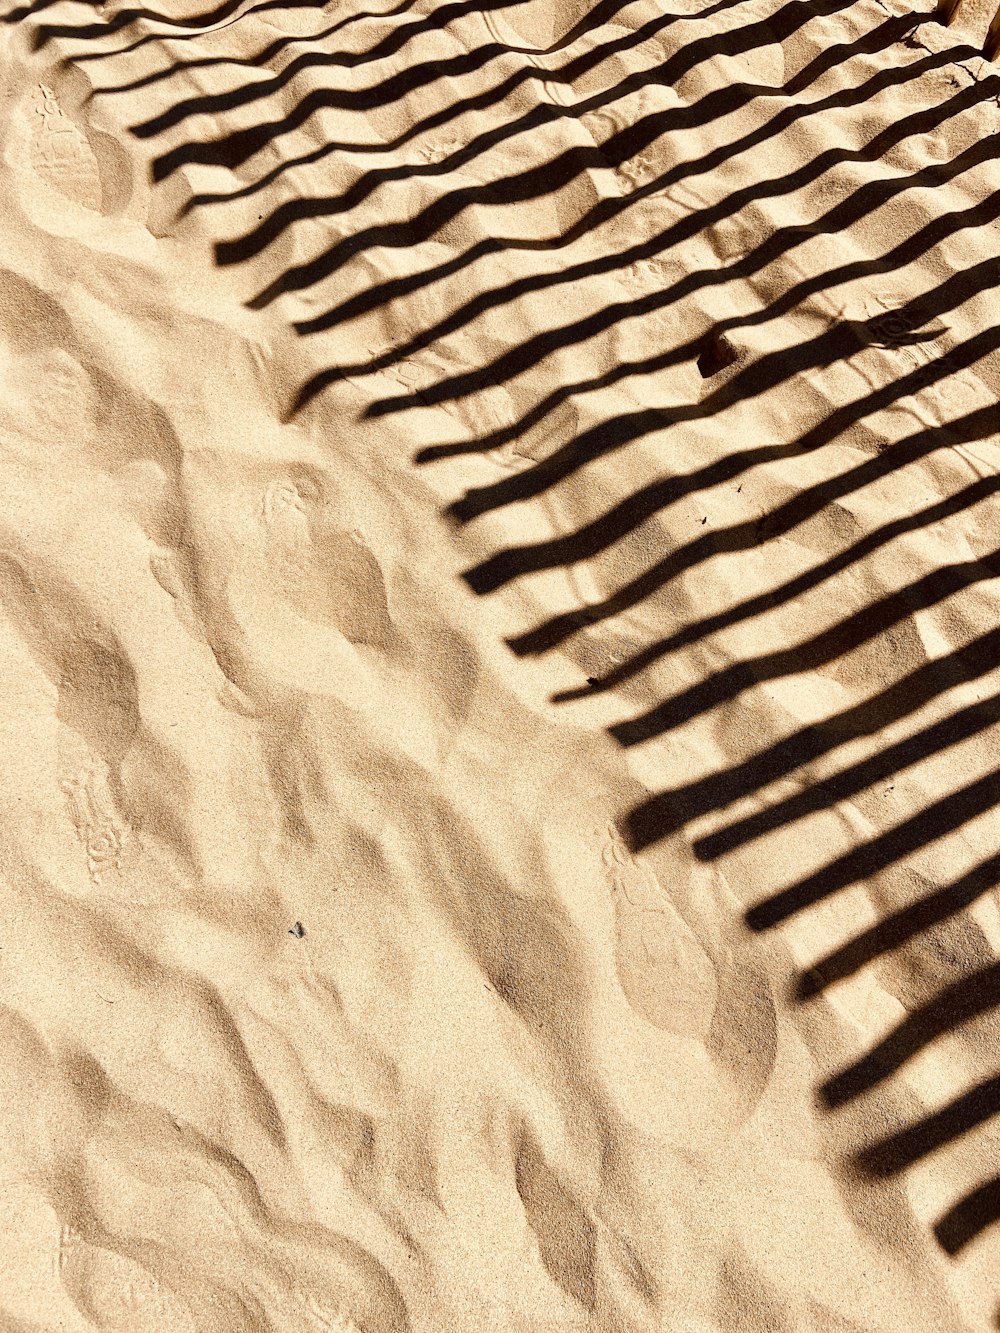 L’ombre d’un banc sur une plage de sable